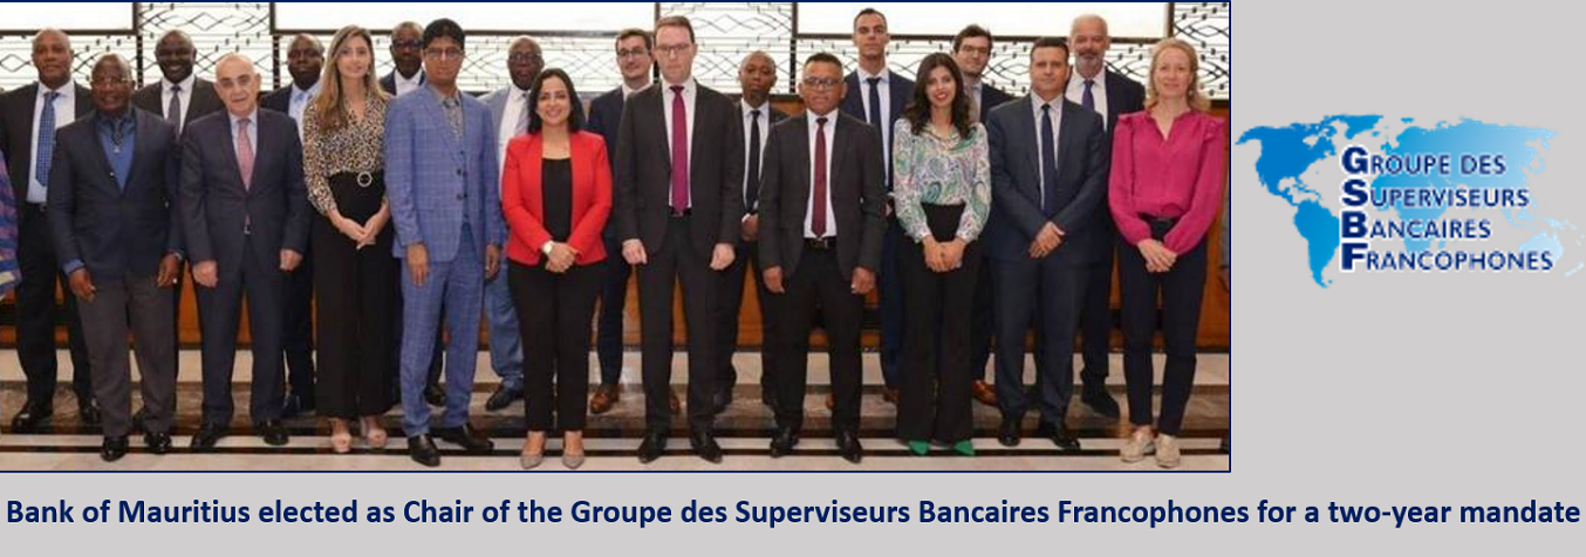 Communiqué de Presse: La Banque de Maurice élue à l’unanimité à la présidence du Groupe Des Superviseurs Bancaires Francophones pour un mandat de deux ans